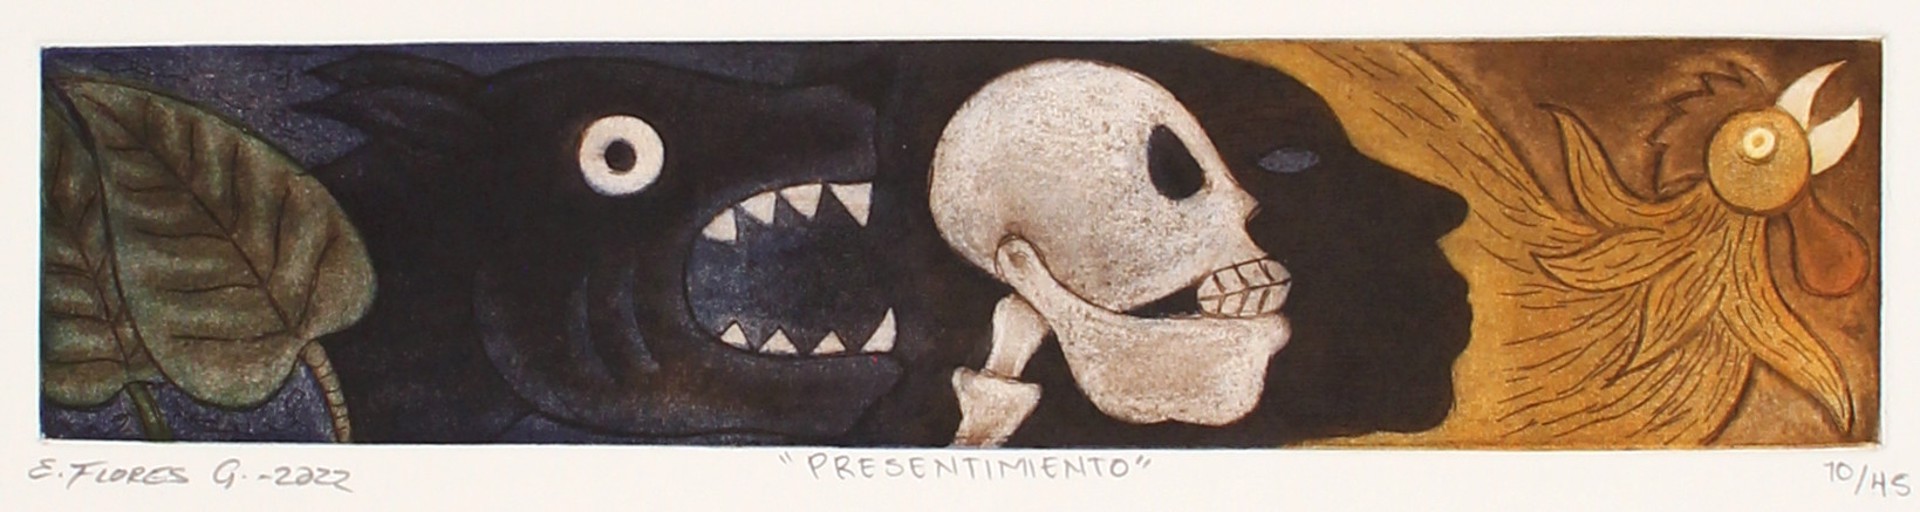 Presentimiento by Enrique Flores